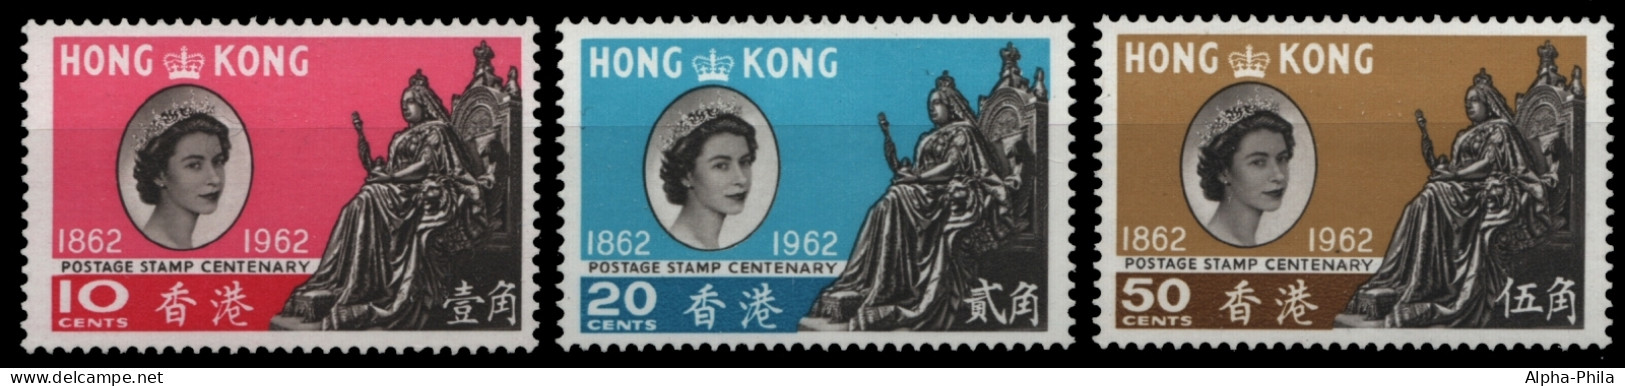 Hongkong 1962 - Mi-Nr. 193-195 ** - MNH - 100 Jahre Hongkong-Briefmarken - Ungebraucht